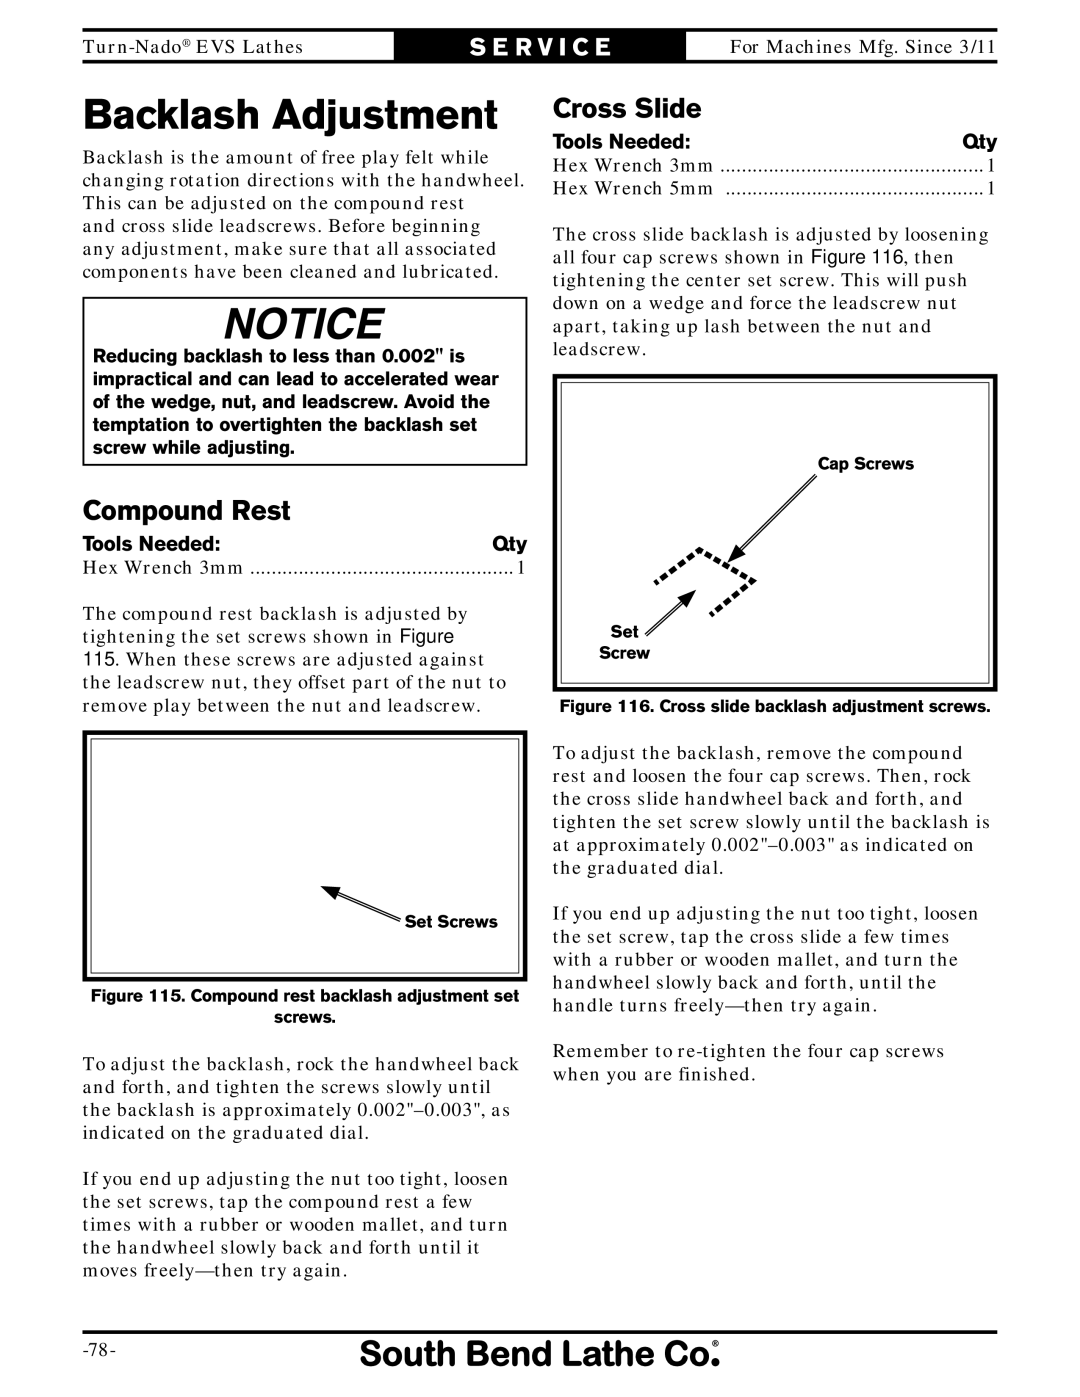 Southbend SB1042PF owner manual Backlash Adjustment, Compound Rest, Cross Slide 